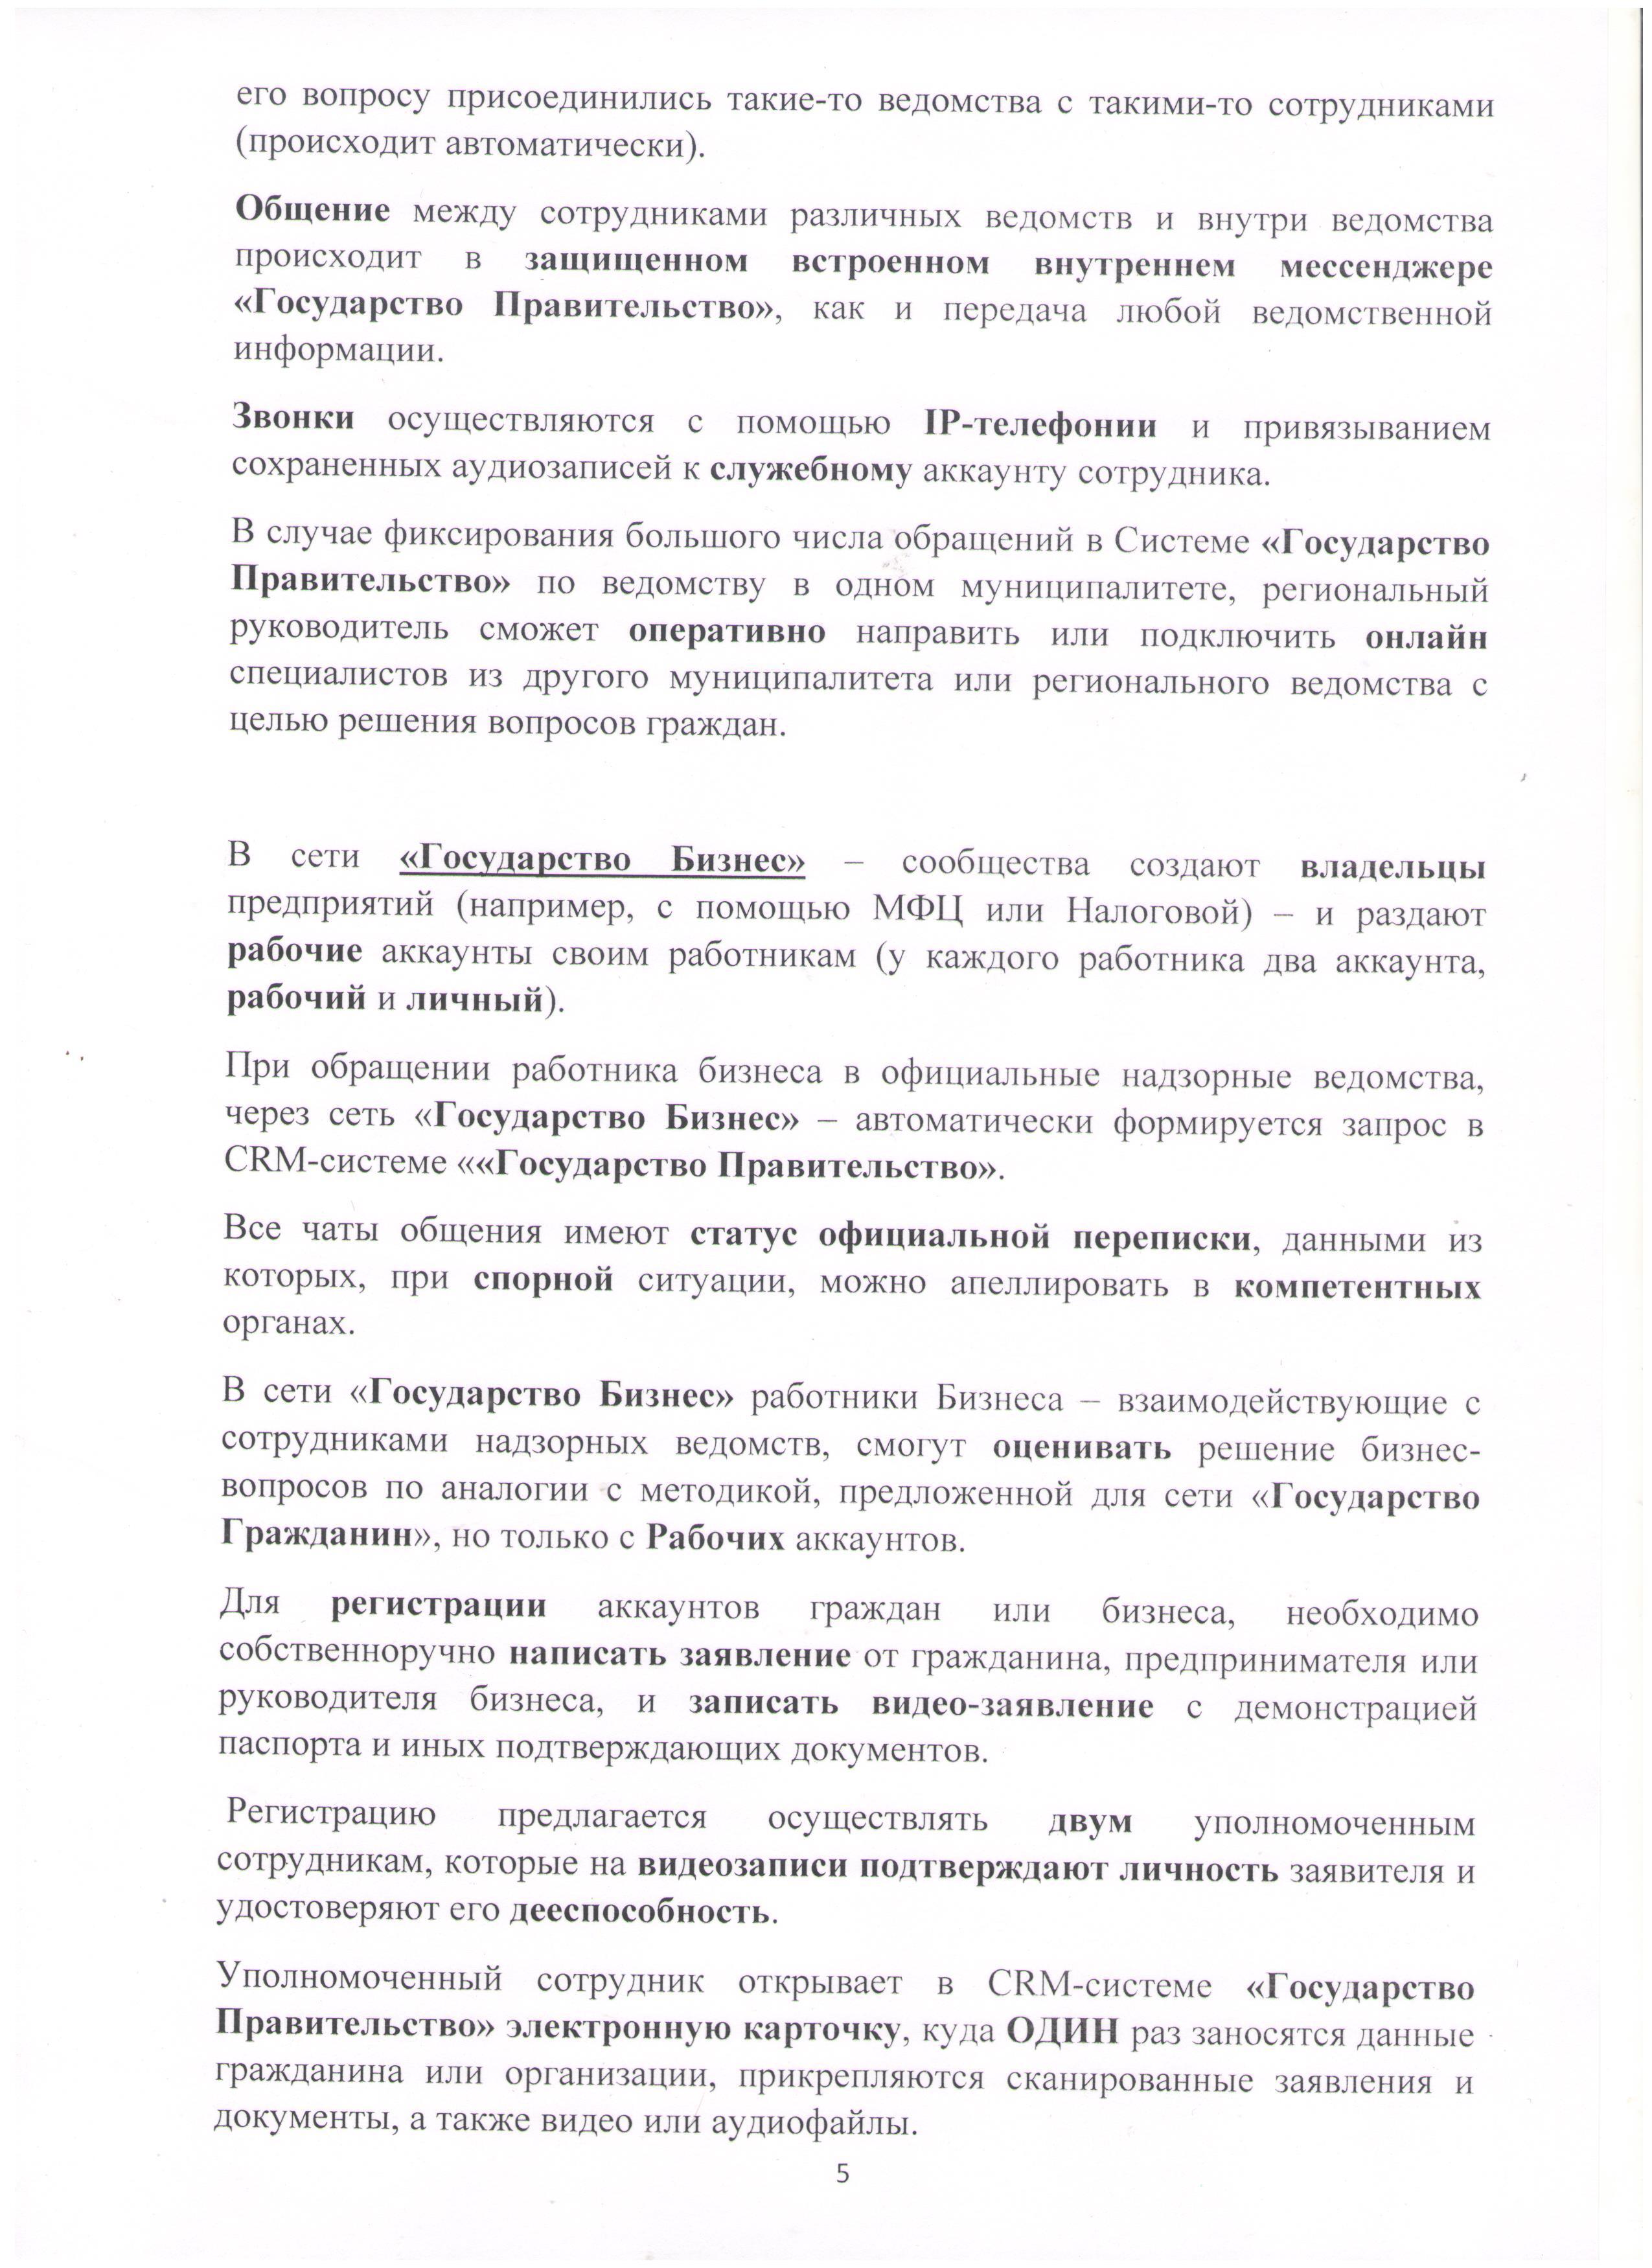  Открытое письмо Президенту РФ Лист 5